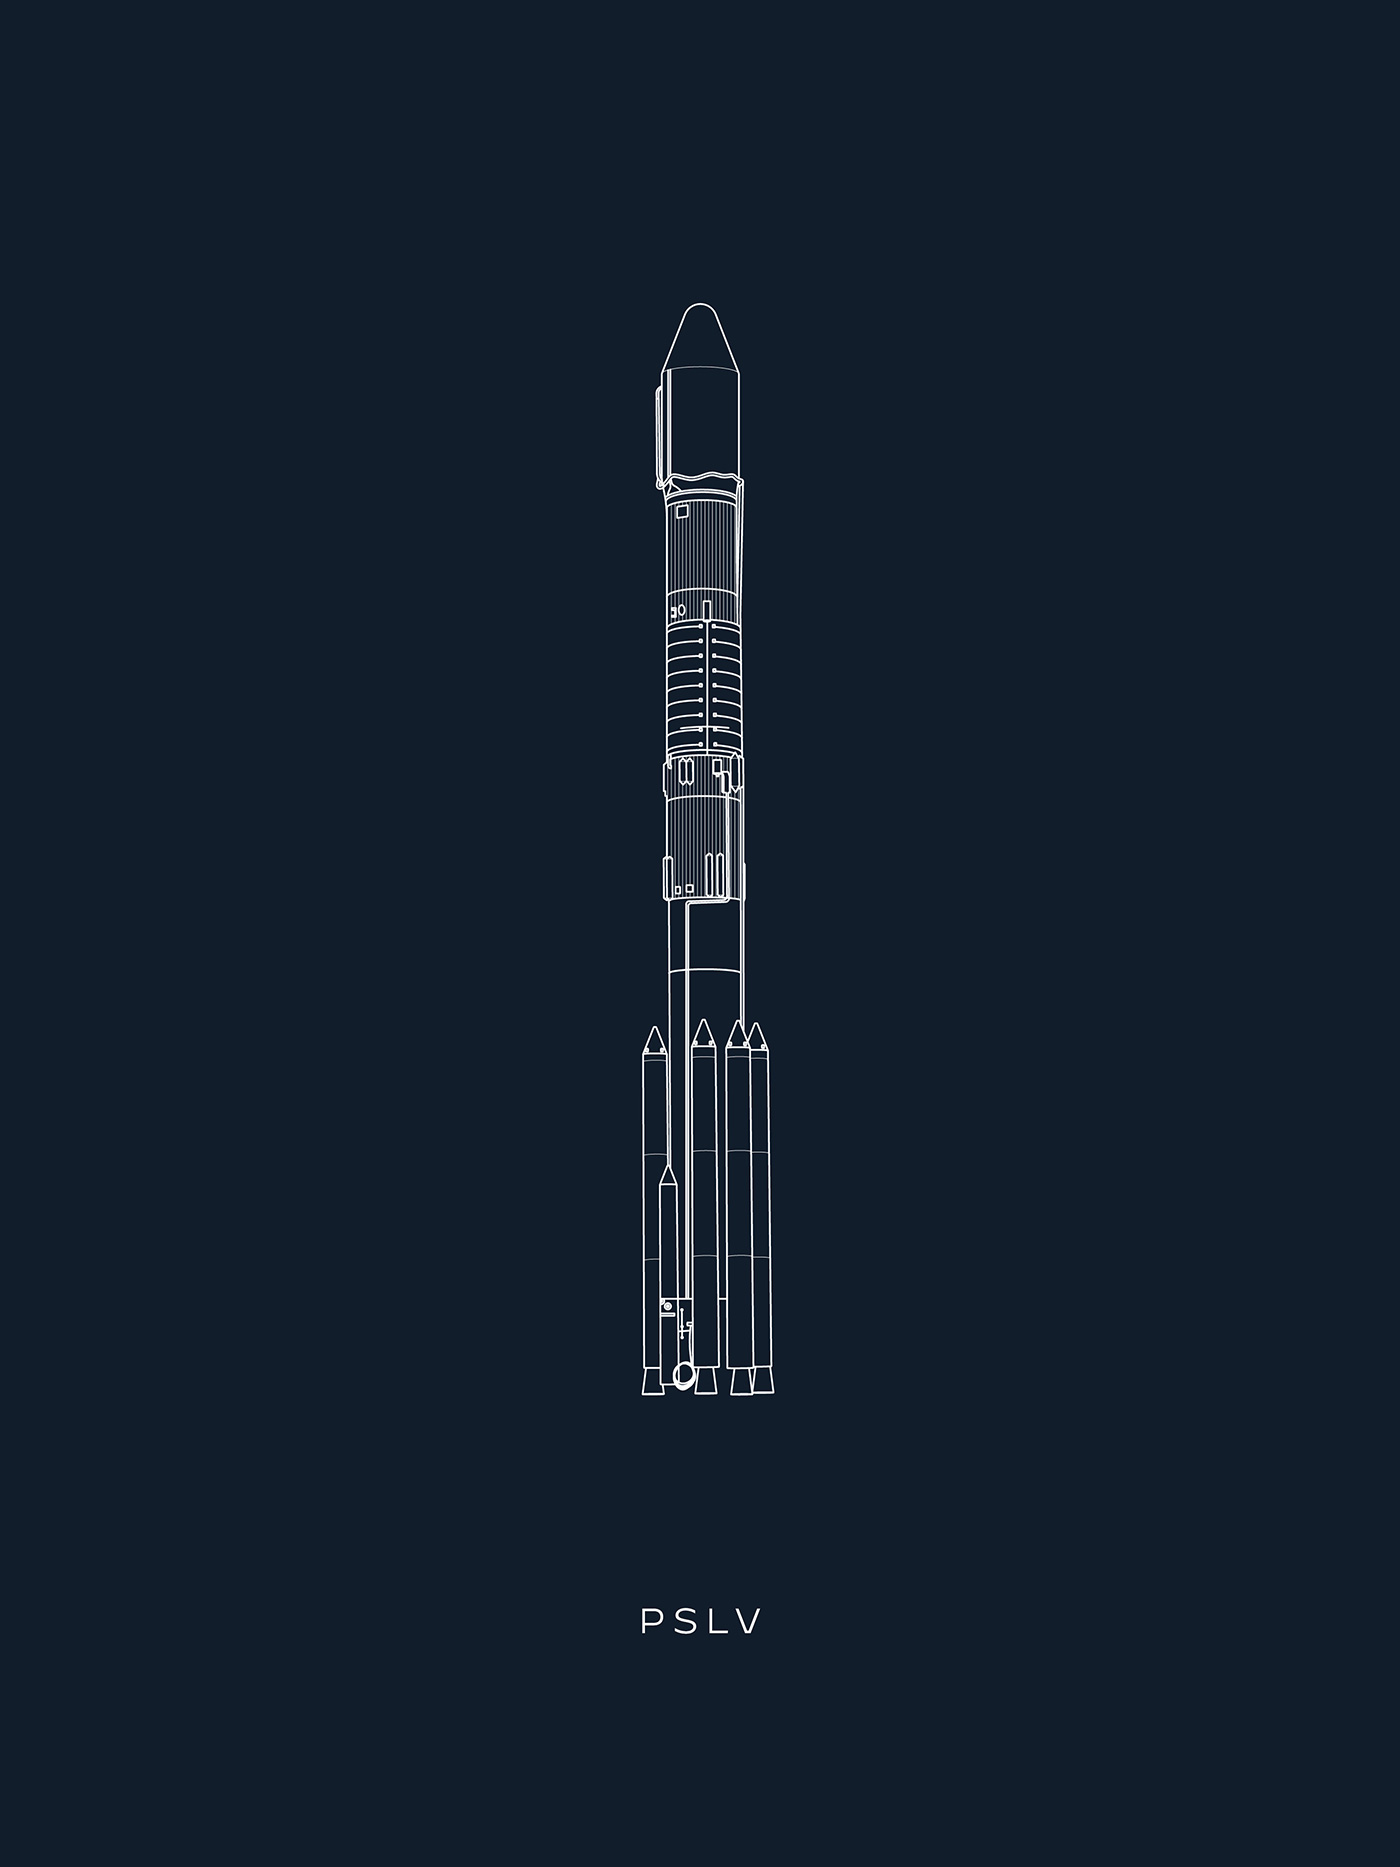 illustration of PSLV rocket